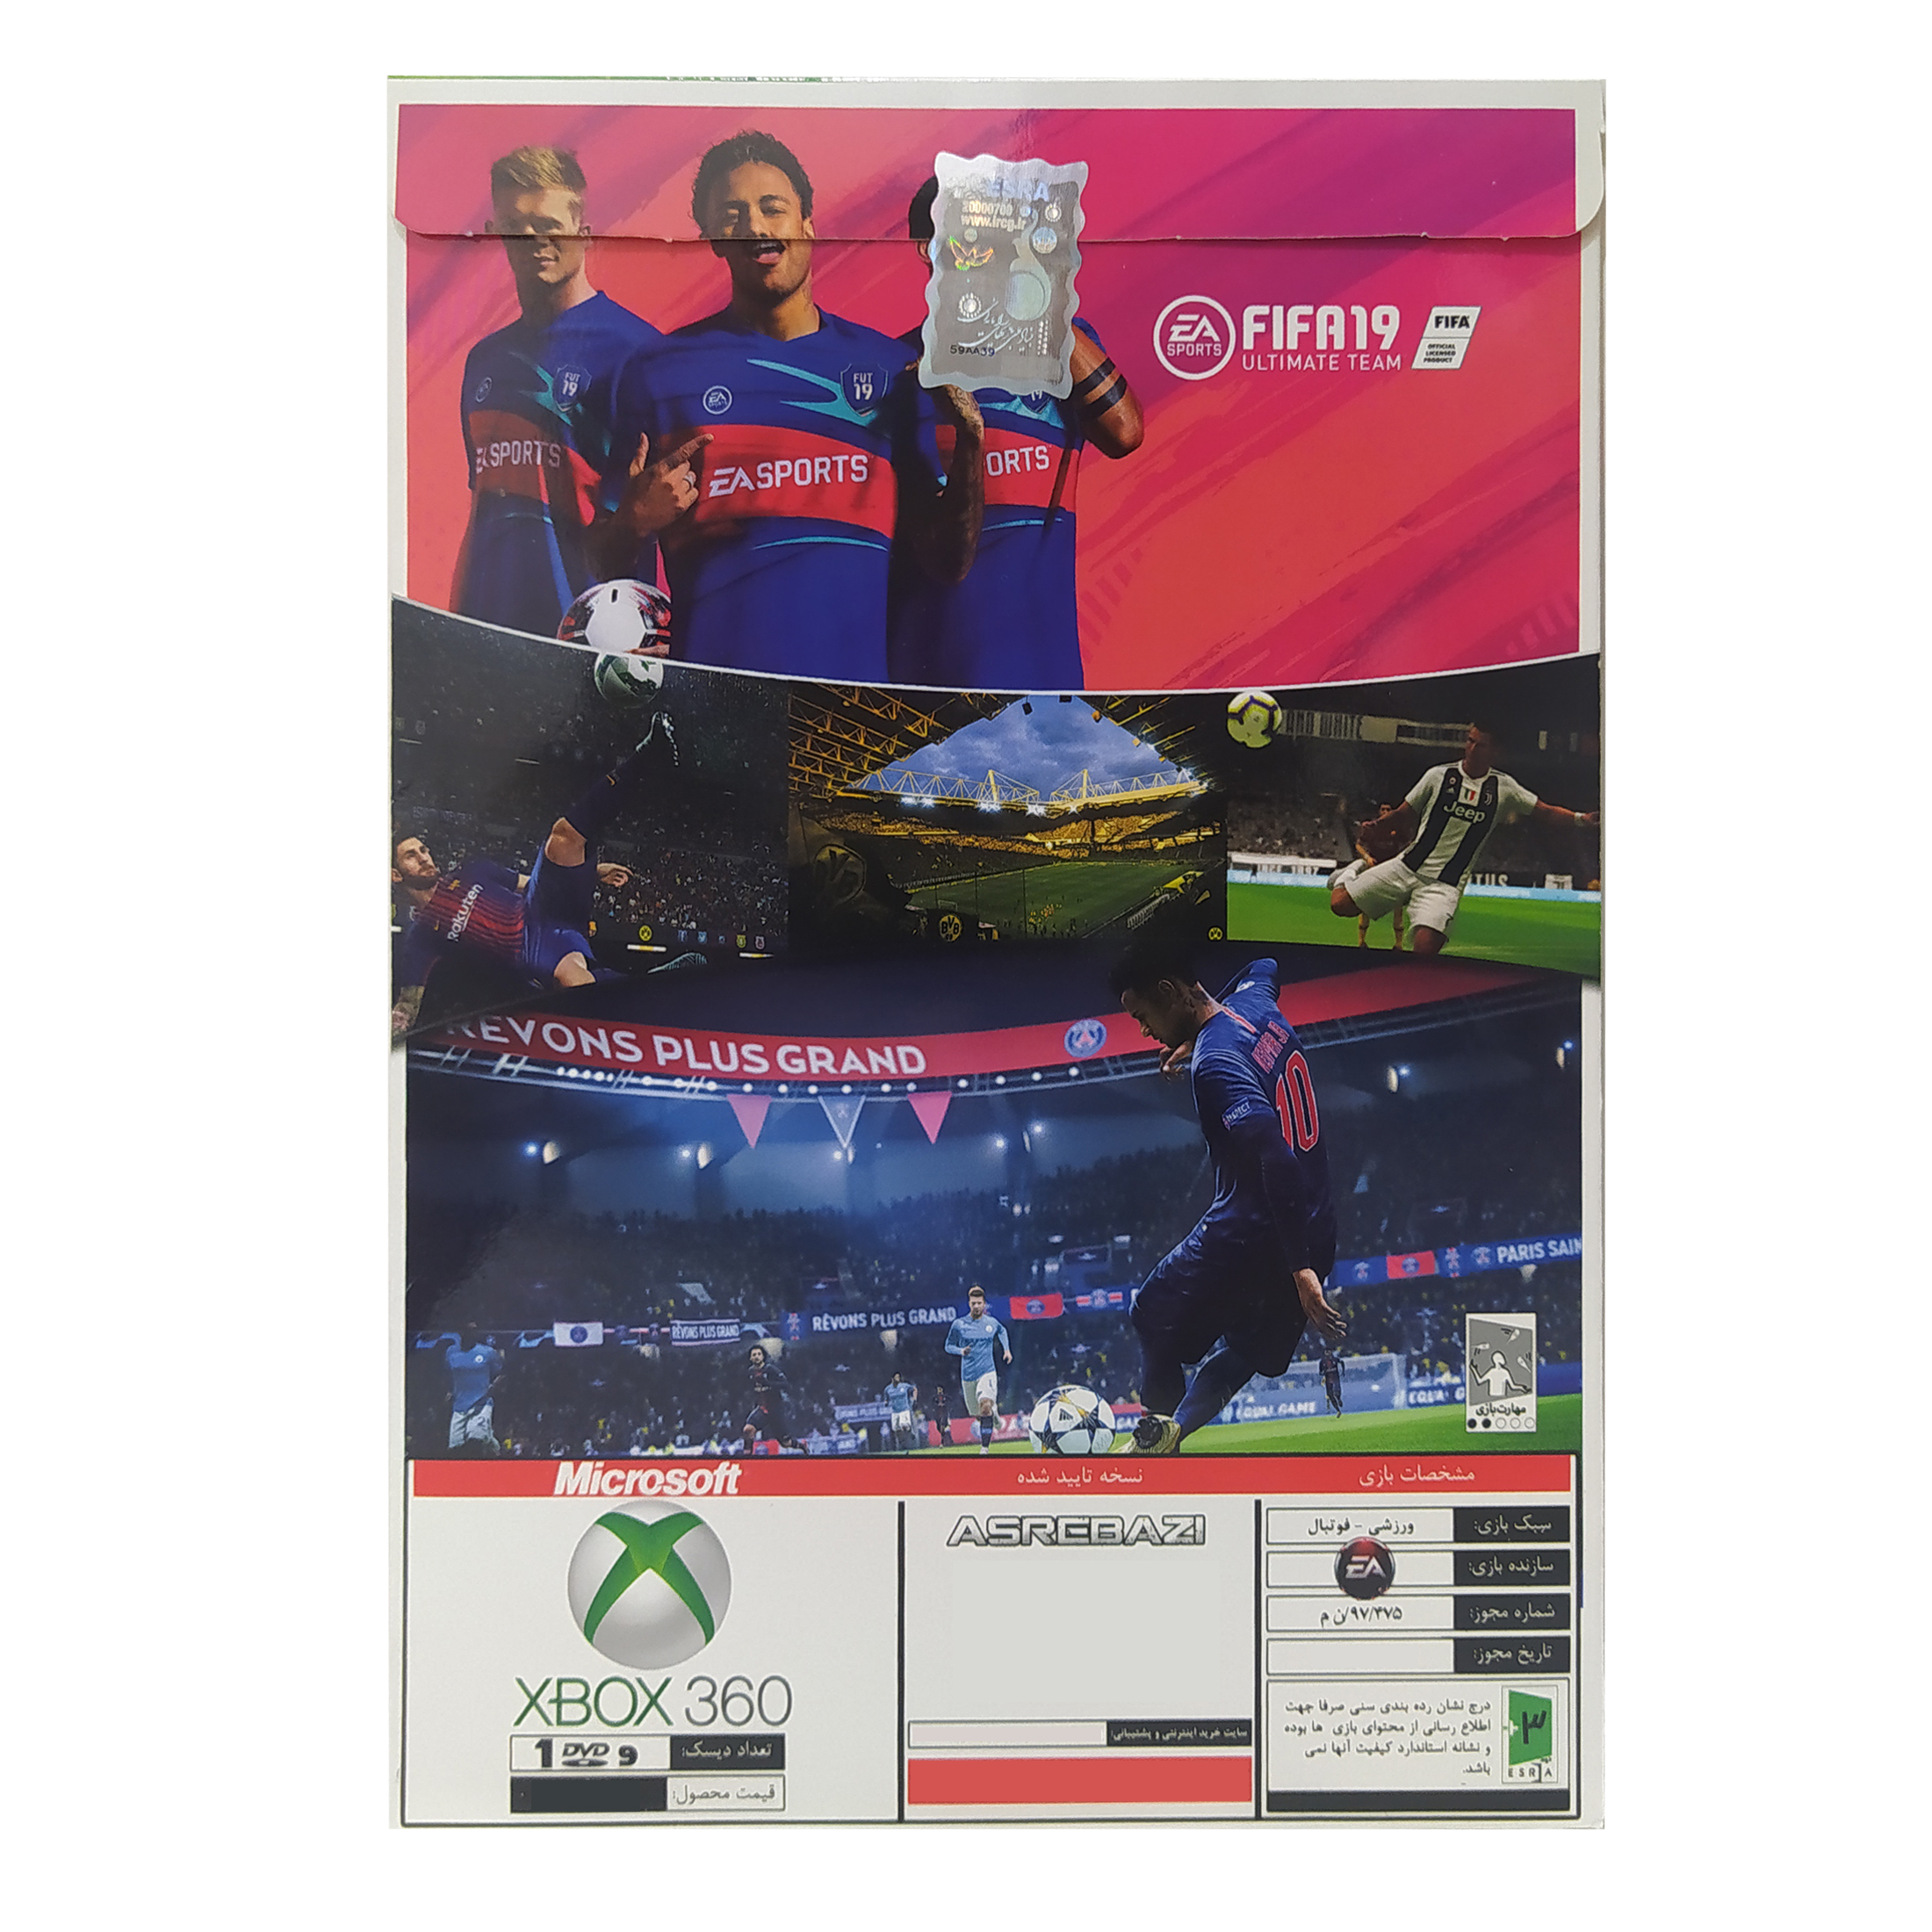 بازی FIFA 19 + لیگ برتر ایران مخصوص XBOX 360 نشر عصر بازی